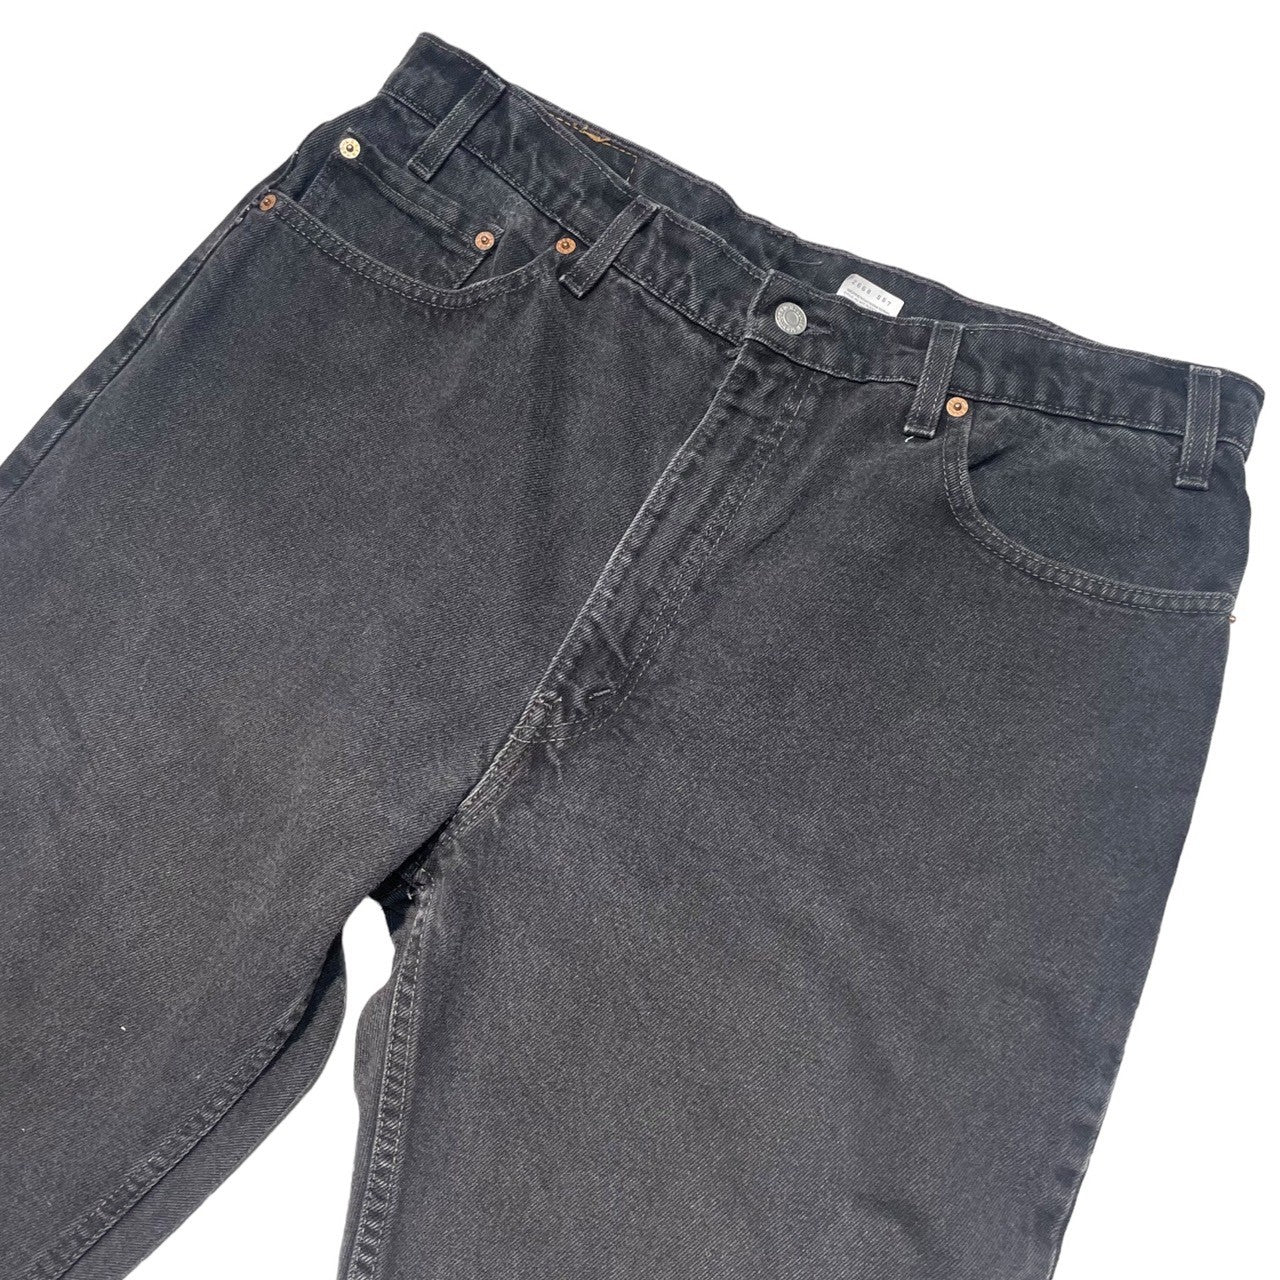 Levi's(リーバイス) 90's 505 black straight denim pants ブラック ストレート デニム パンツ 505-0260 W38/L30 ブラック 先染め メキシコ製 1998年製造 90年代 ヴィンテージ